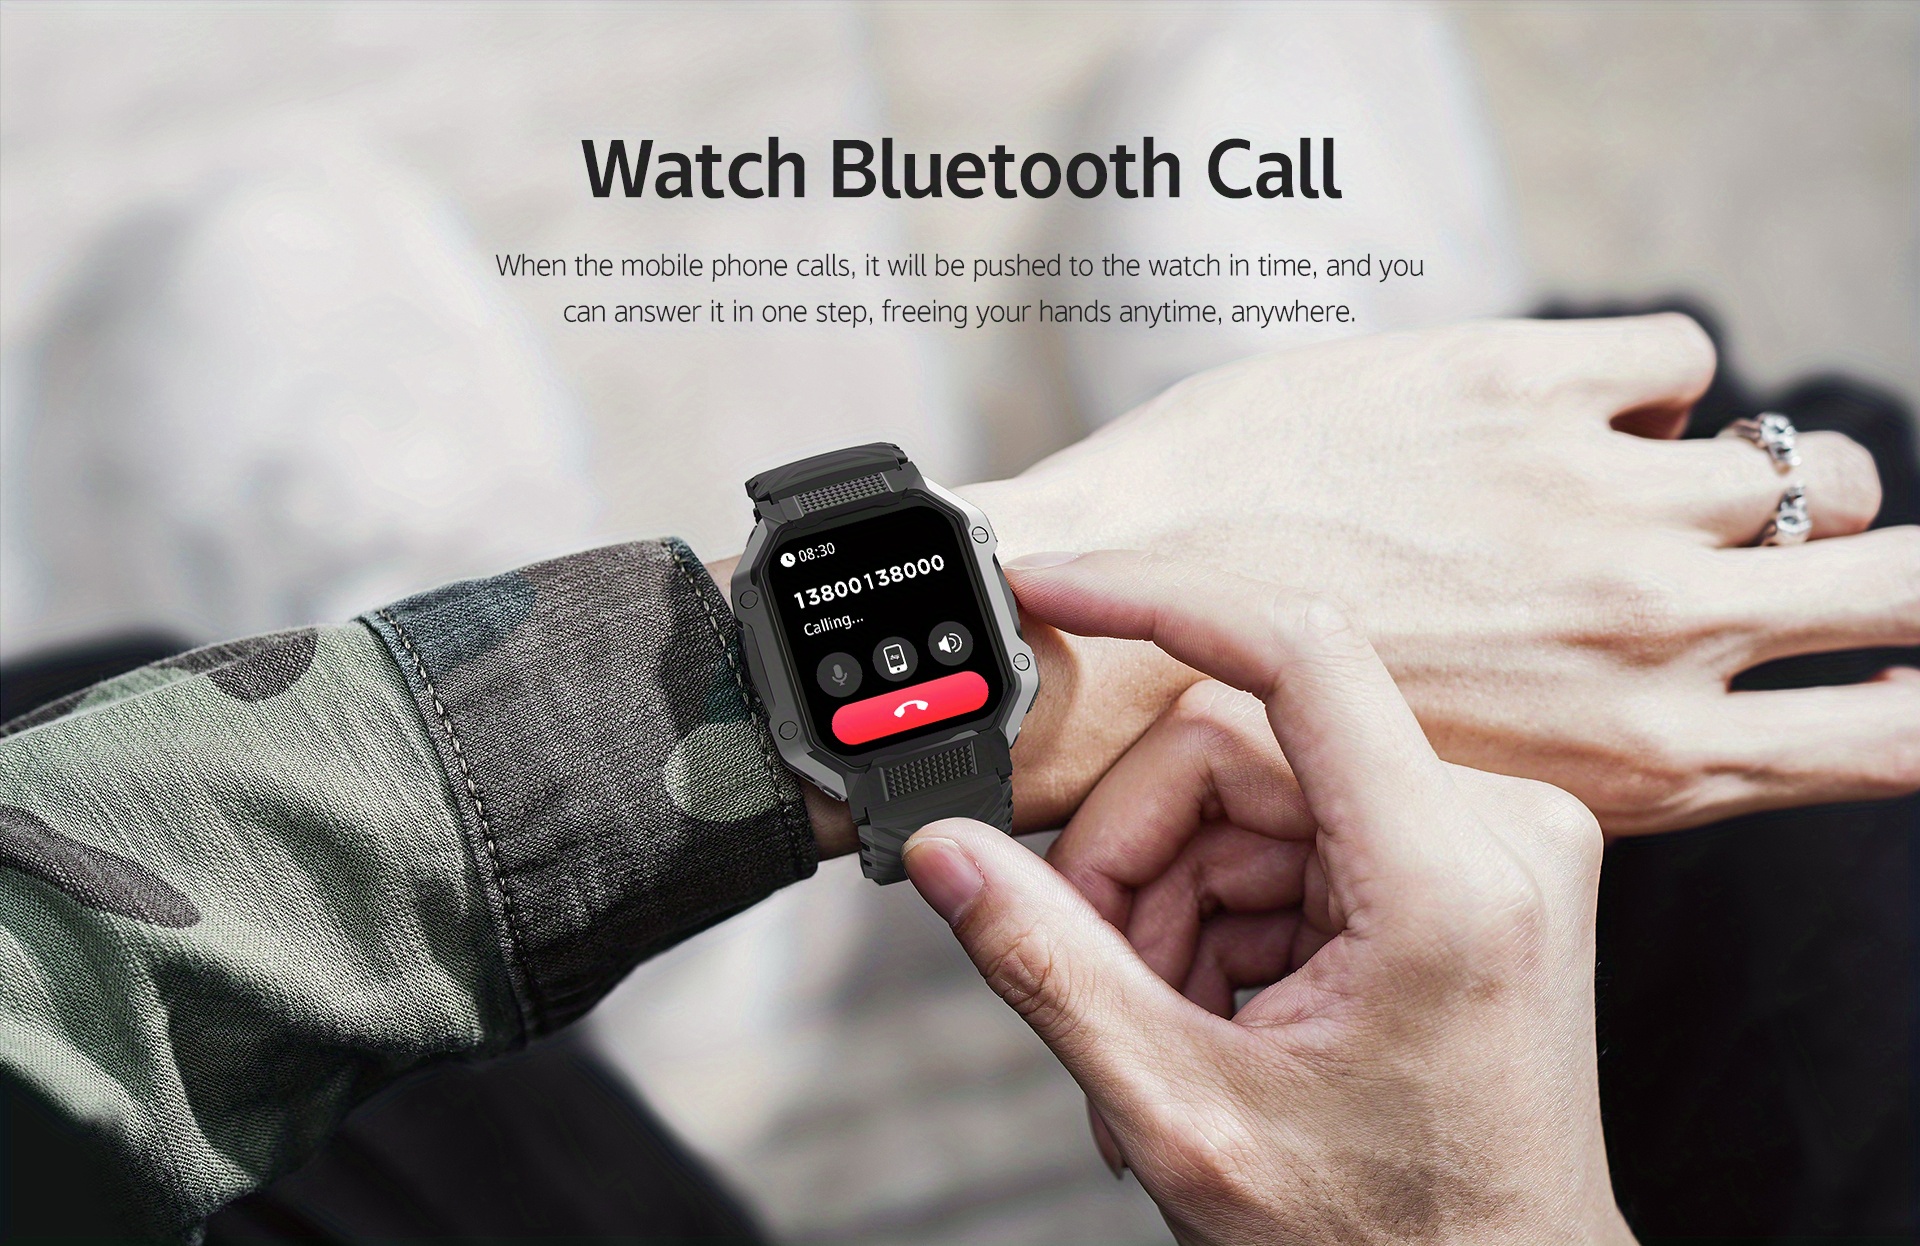 Smartwatch Hombre Reloj Inteligente Bluetooth Llamada 1.83